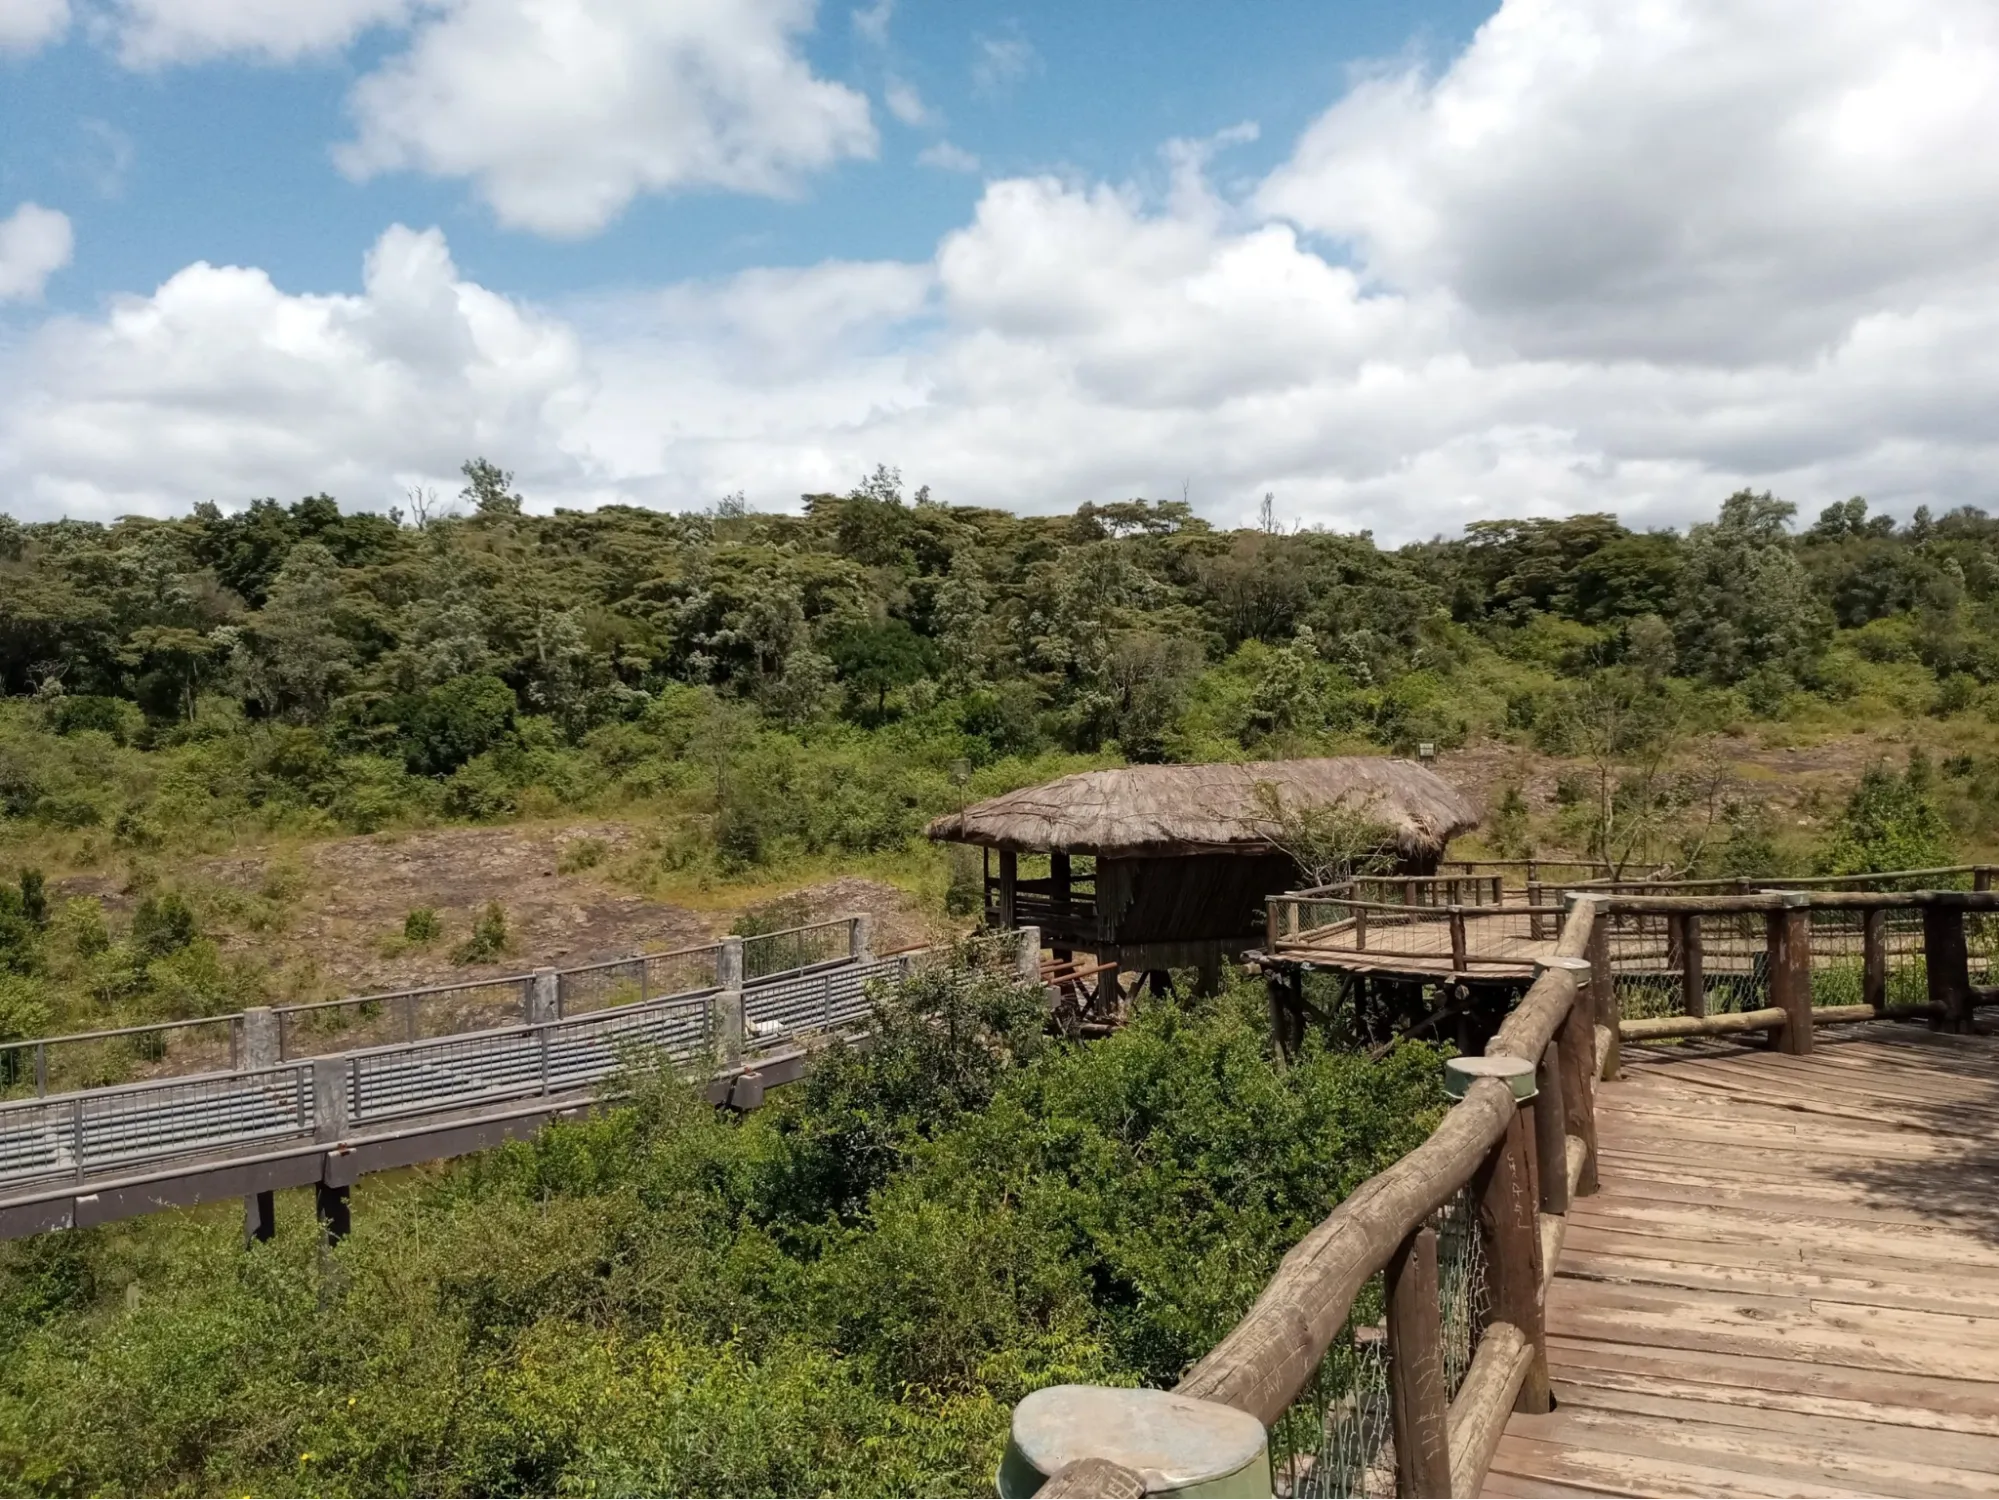 Visiting the Nairobi National Park Safari walk - views of the Nairobi National Park